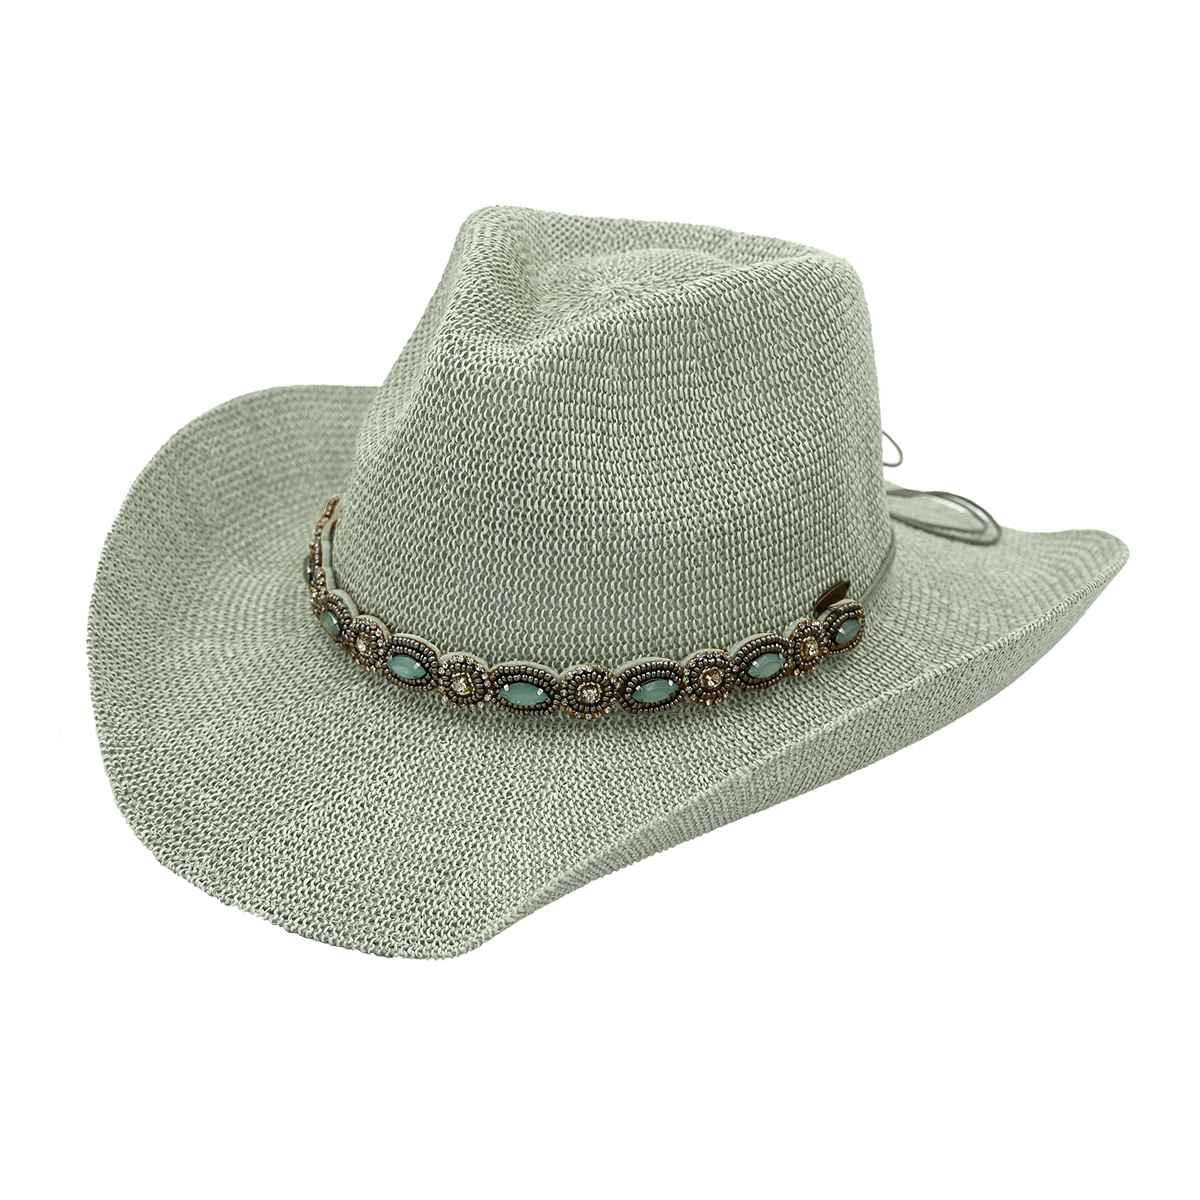 CBC08 C.C Brand Della Cowboy Hat w/ Pearl & Rhinestone - Honeytote